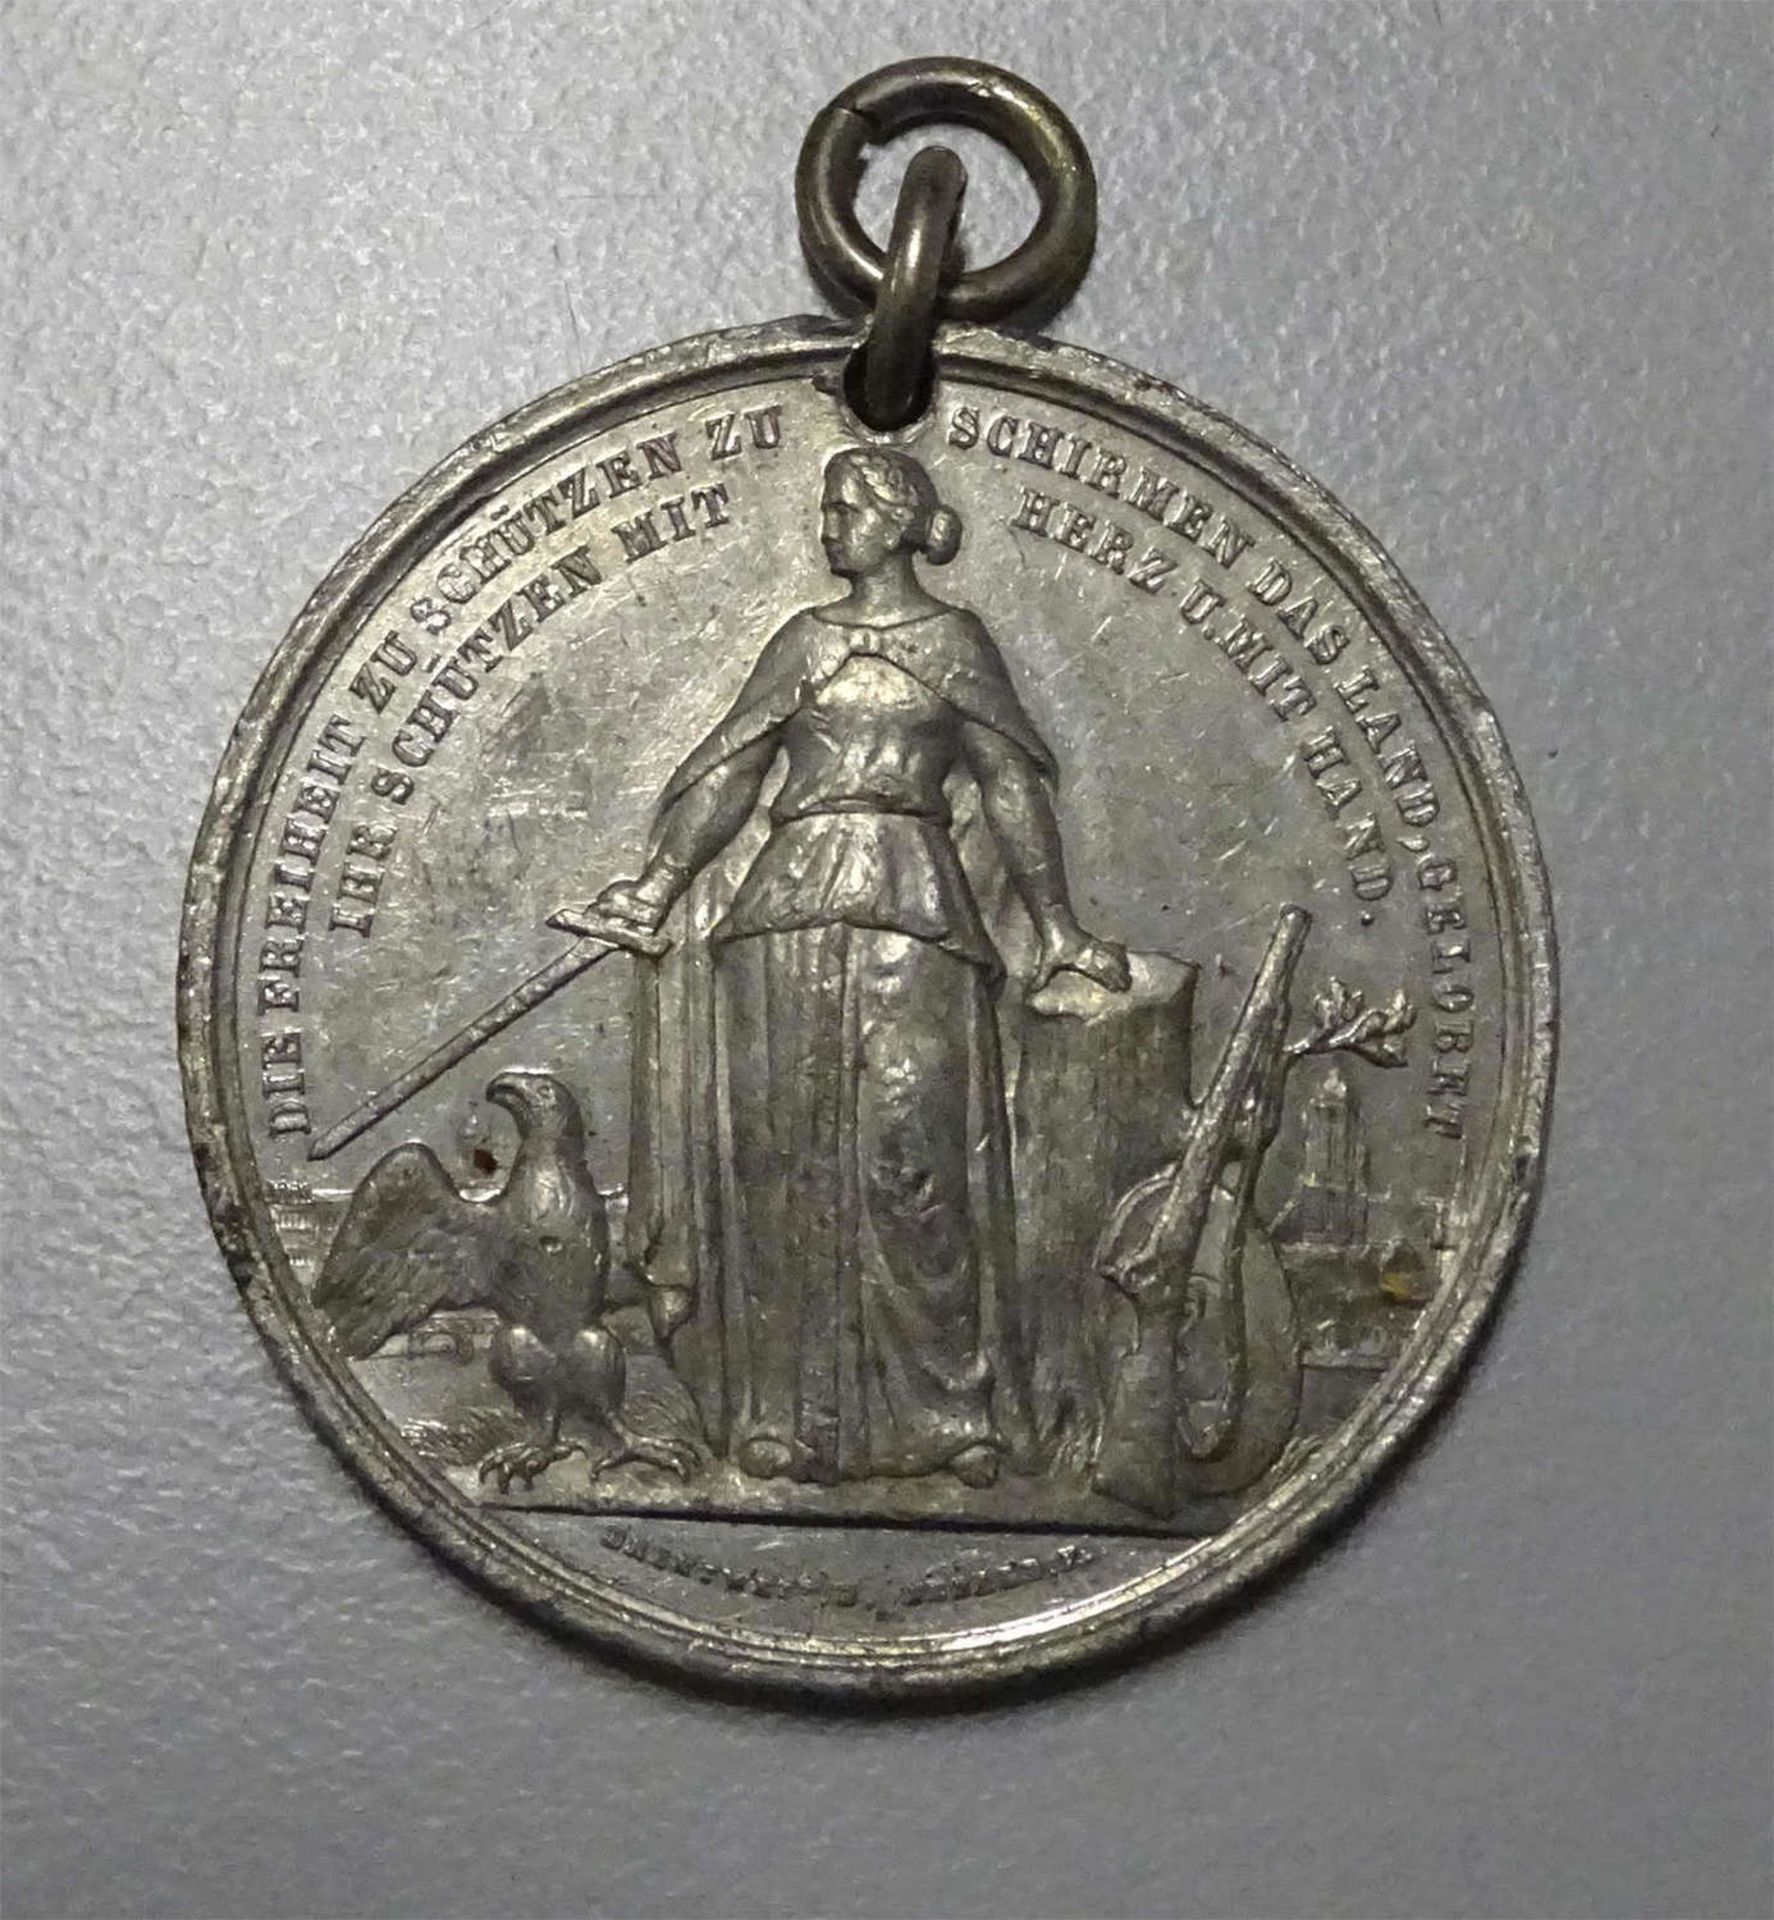 Schützenmedaille Frankfurt 1862, gehenkelt, sonst guter Zustand.Rifle medal Frankfurt 1862,